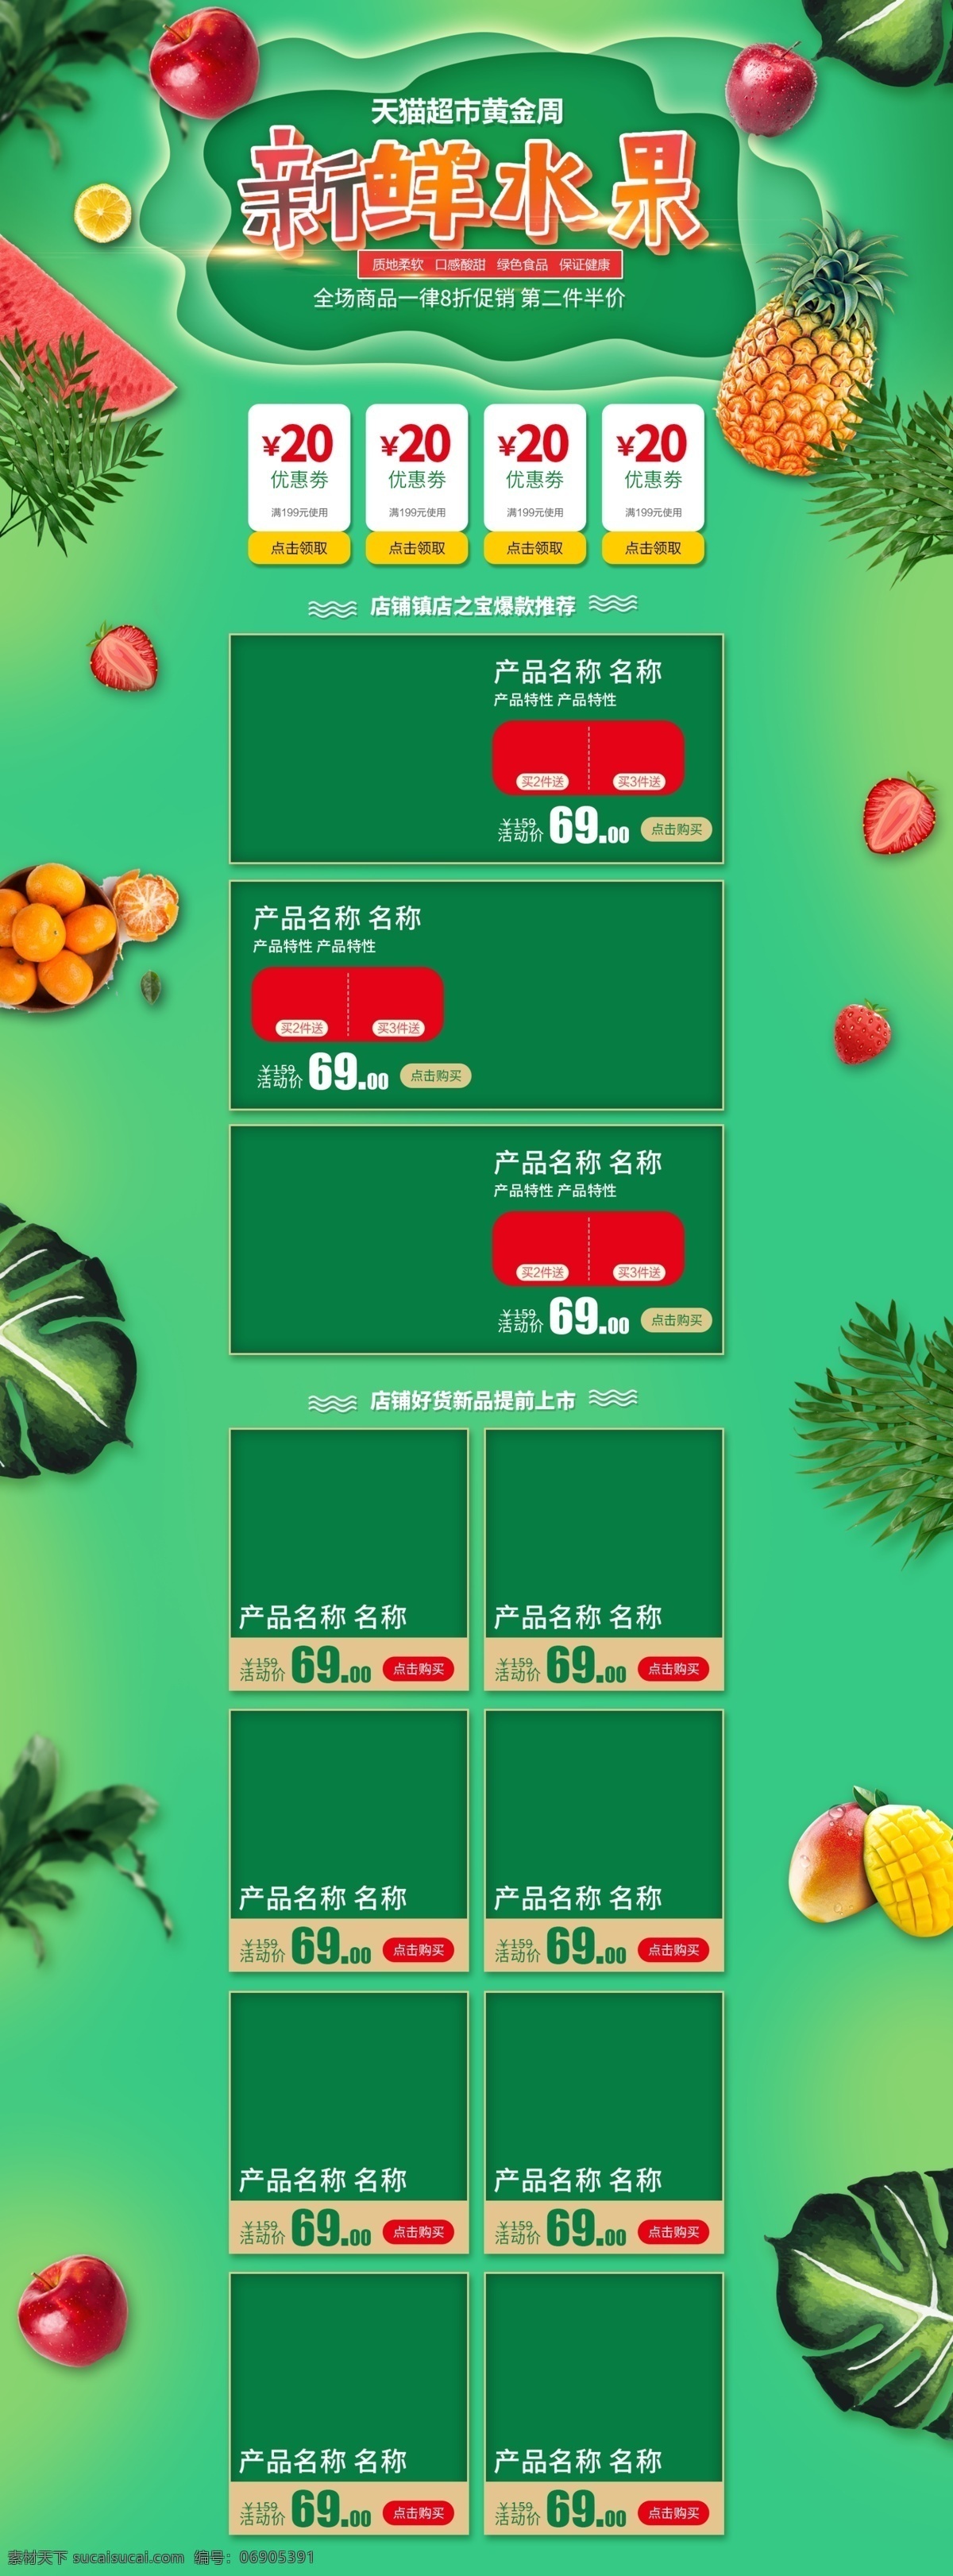 电商 淘宝 超市 黄金周 促销 绿色 新鲜 水果 首页 苹果 西瓜 超市黄金周 热带植物 菠萝